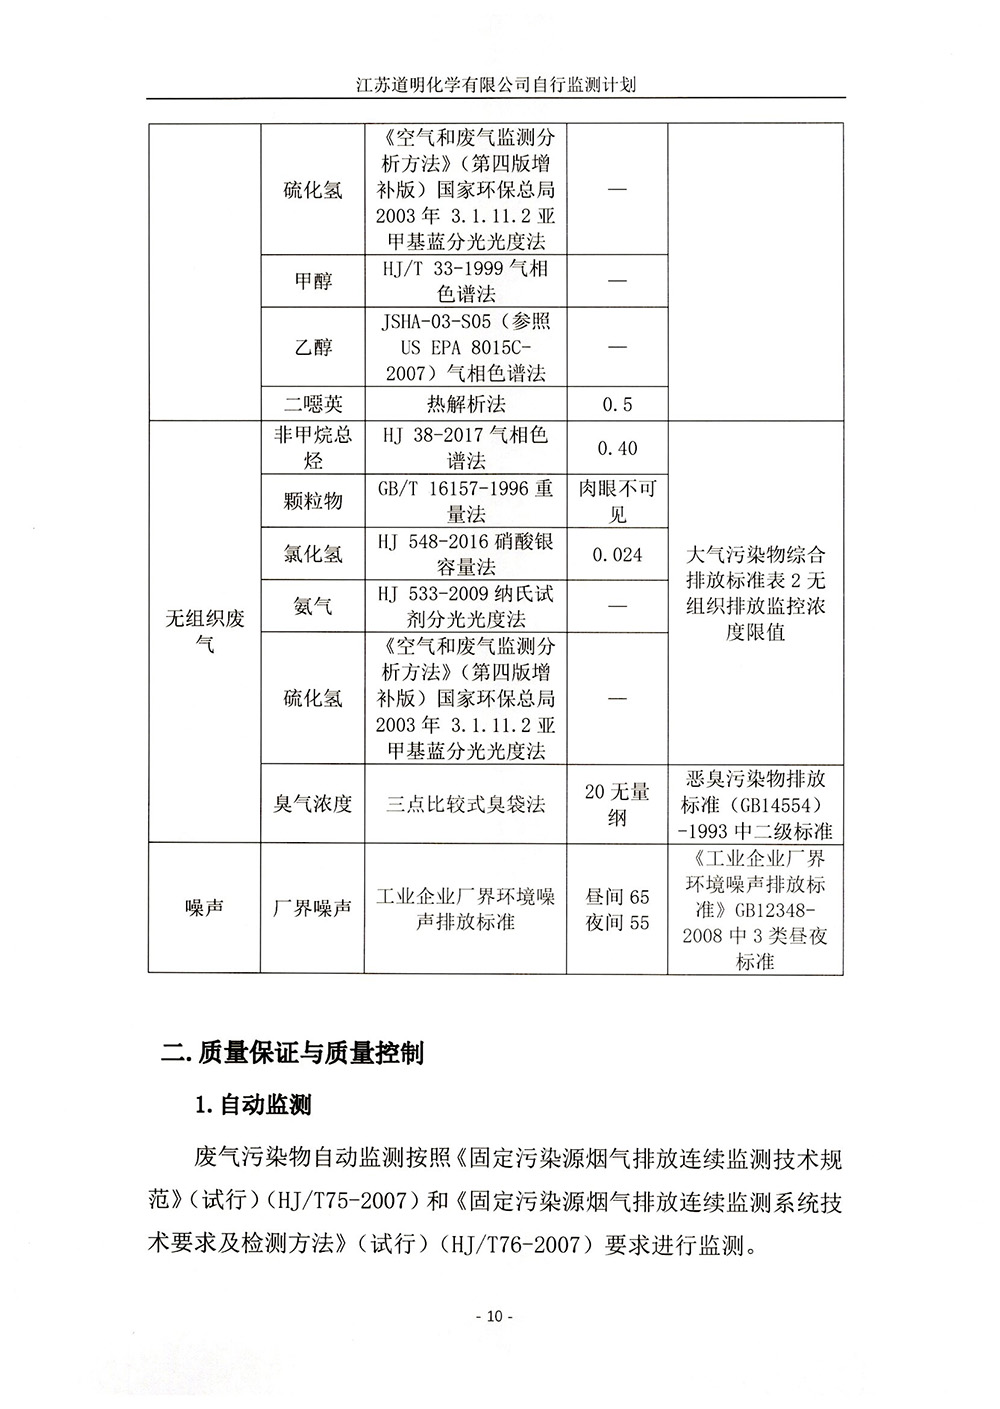 江苏道明化学有限公司自行监测计划修订版